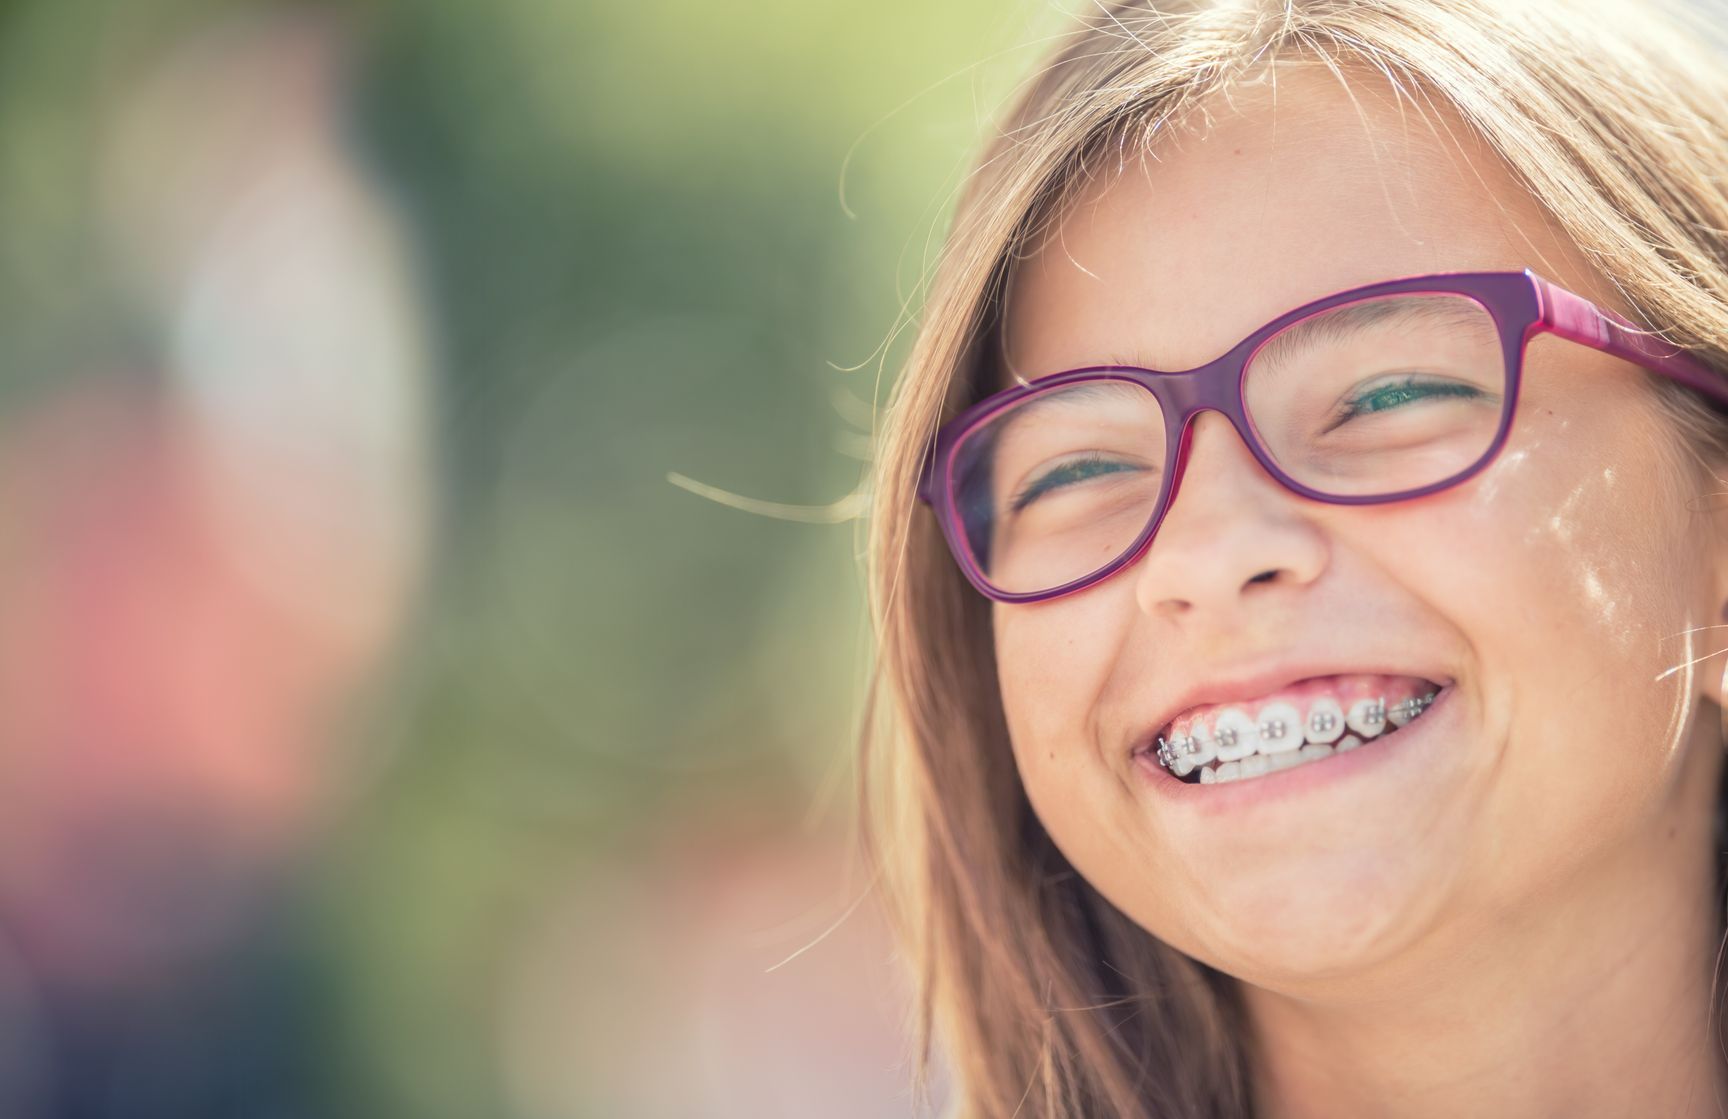 Petite fille qui sourit avec un appareil dentaire et des lunettes rouges.